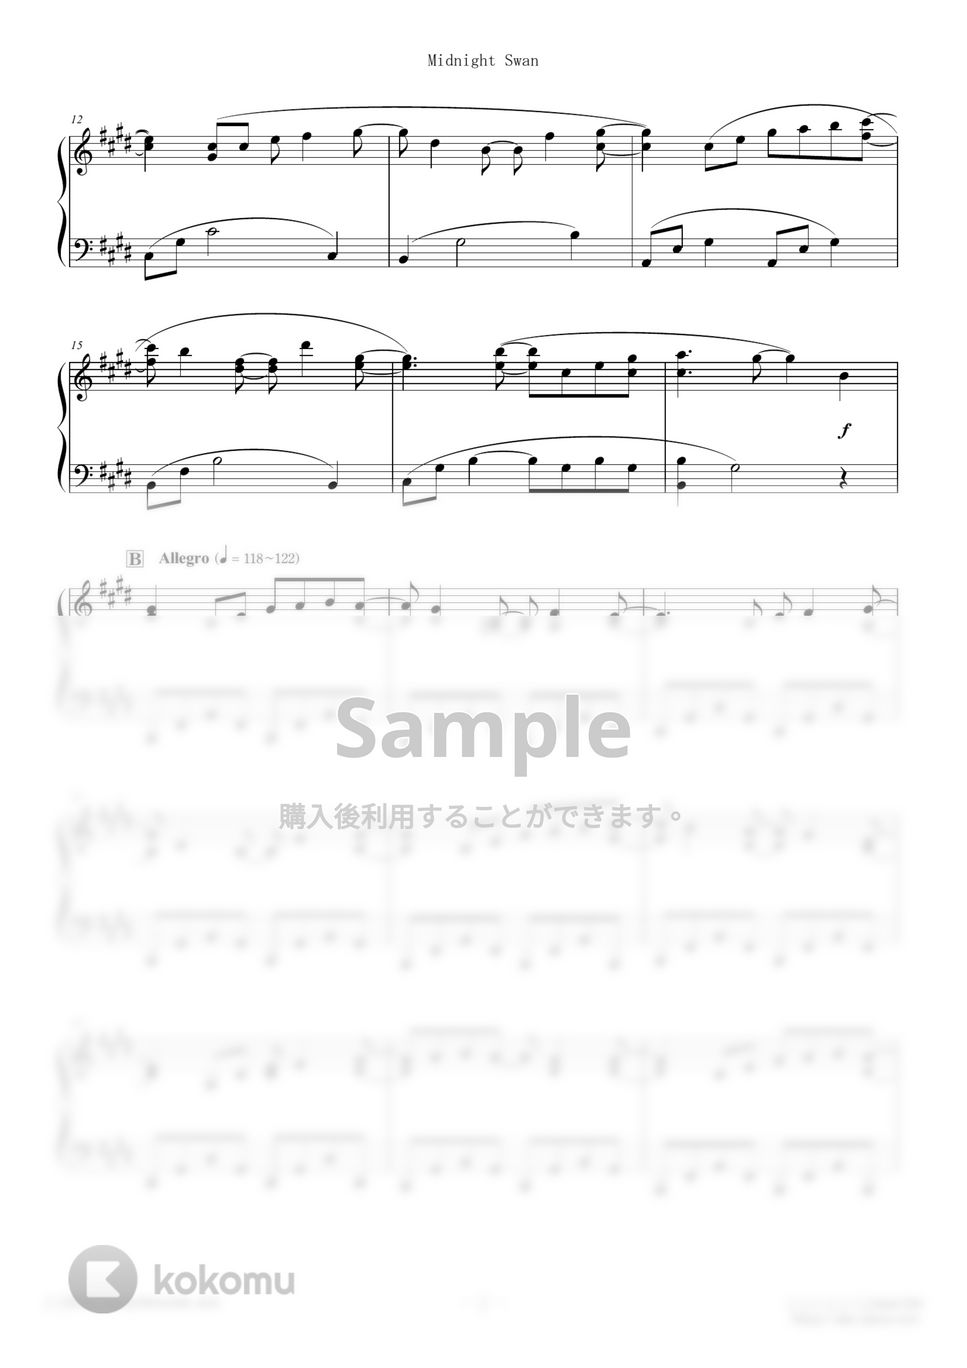 渋谷慶一郎 - Midnight Swan (難易度：★★★☆☆/映画「ミッドナイトスワン」主題歌) by Dさん